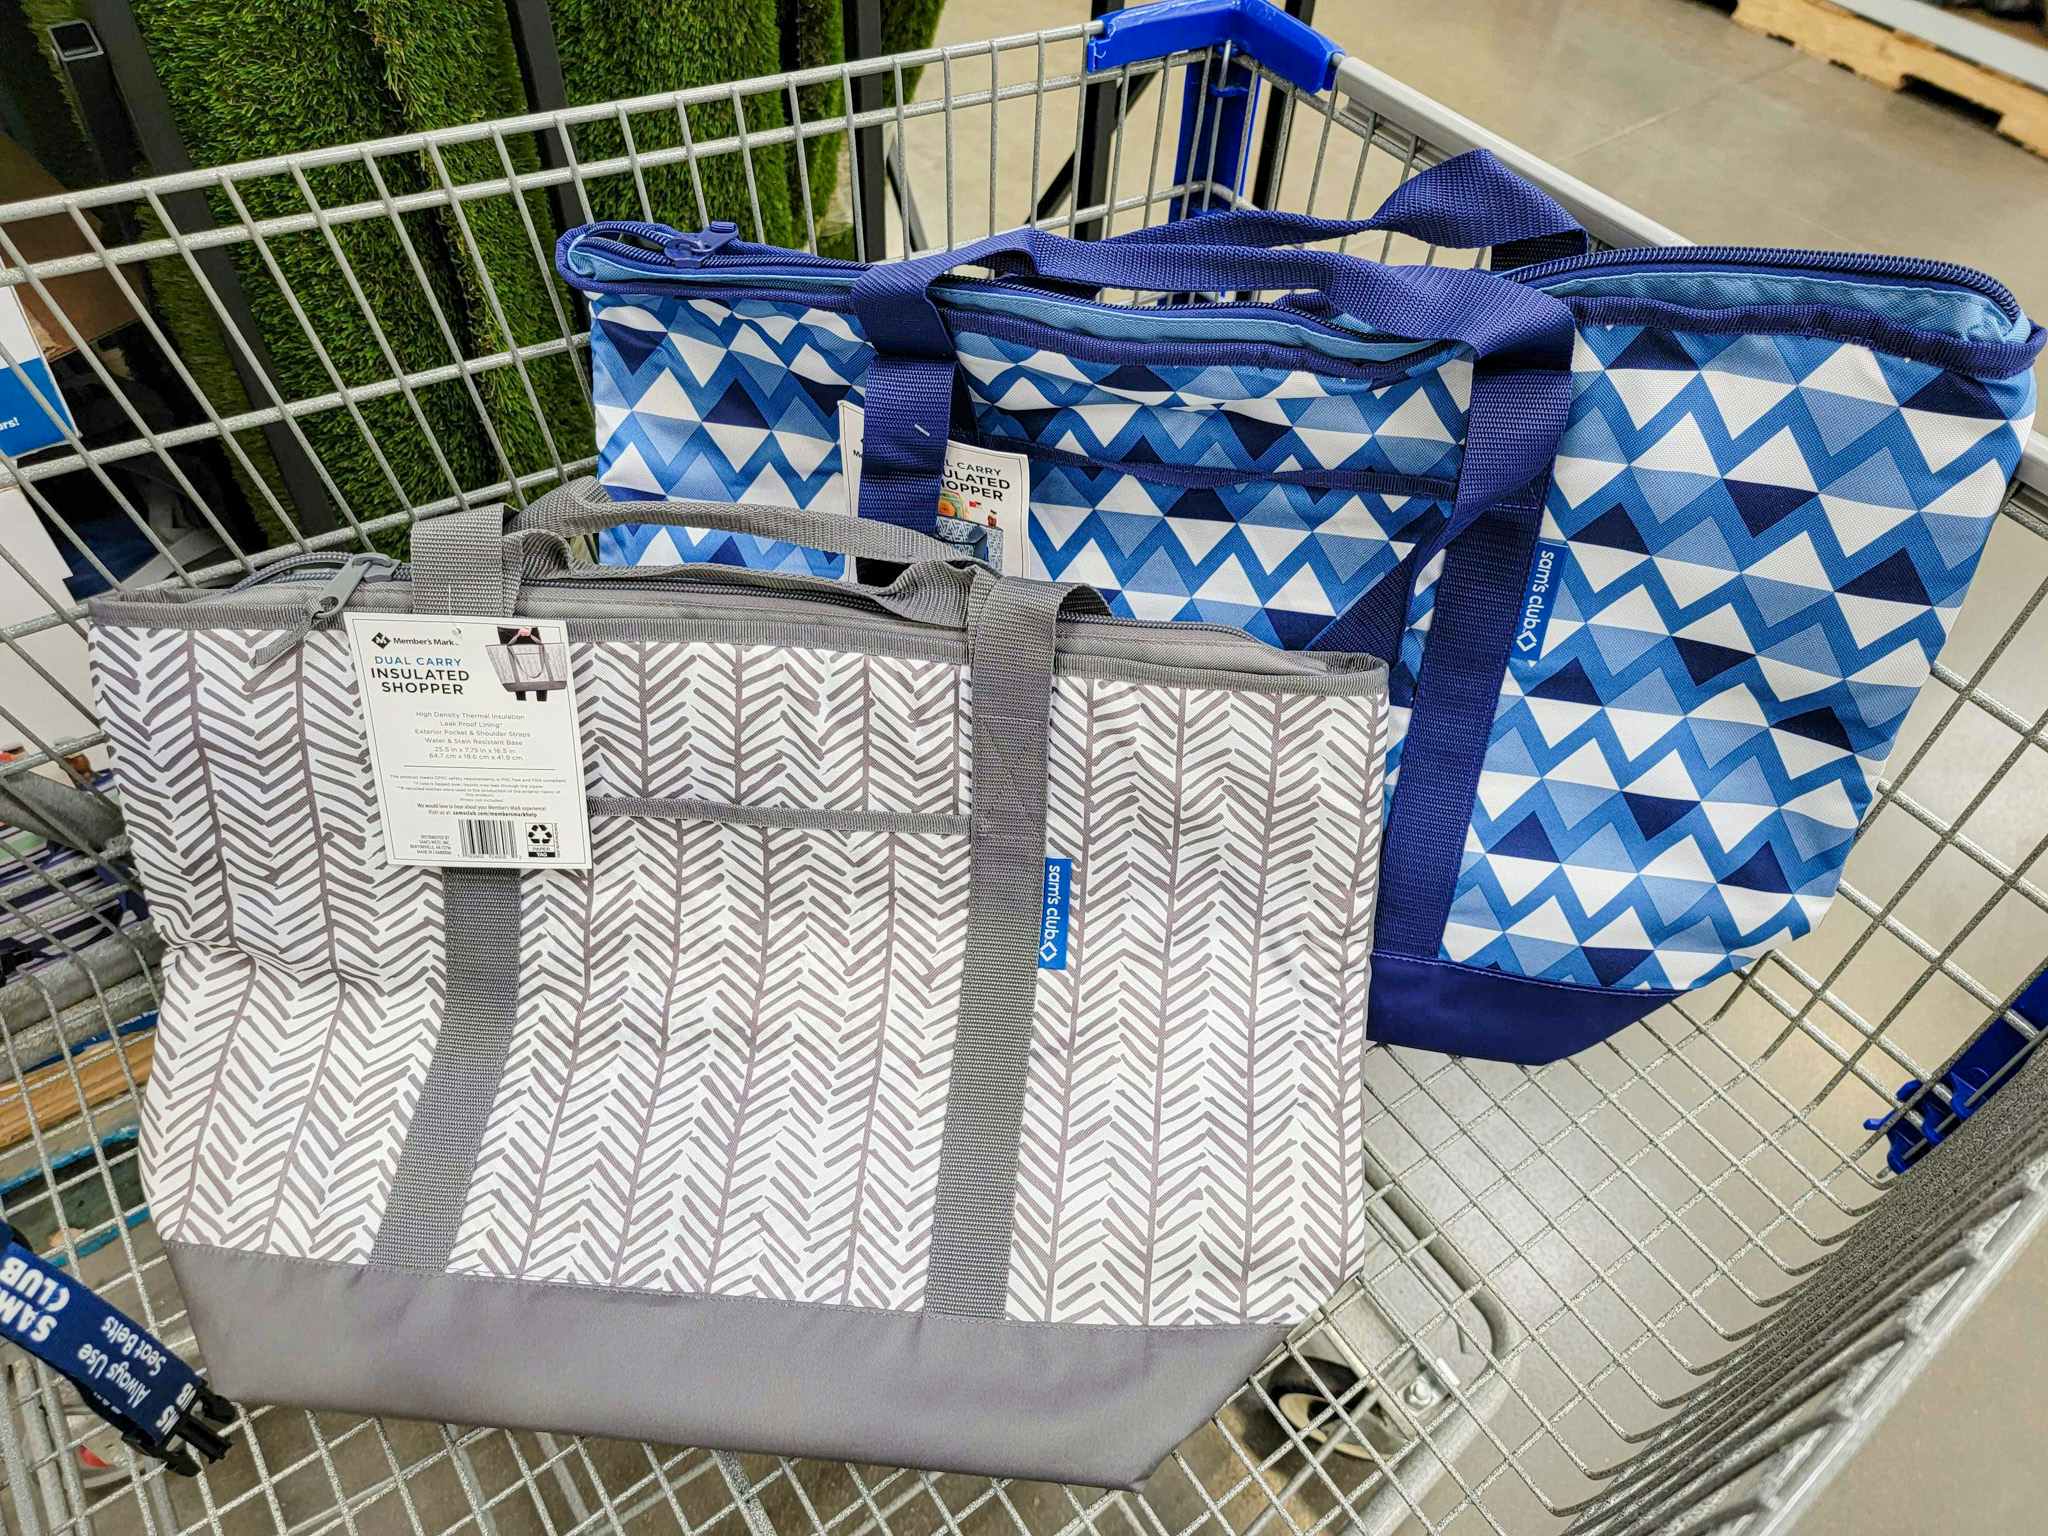 2 shopper tote bags in a cart